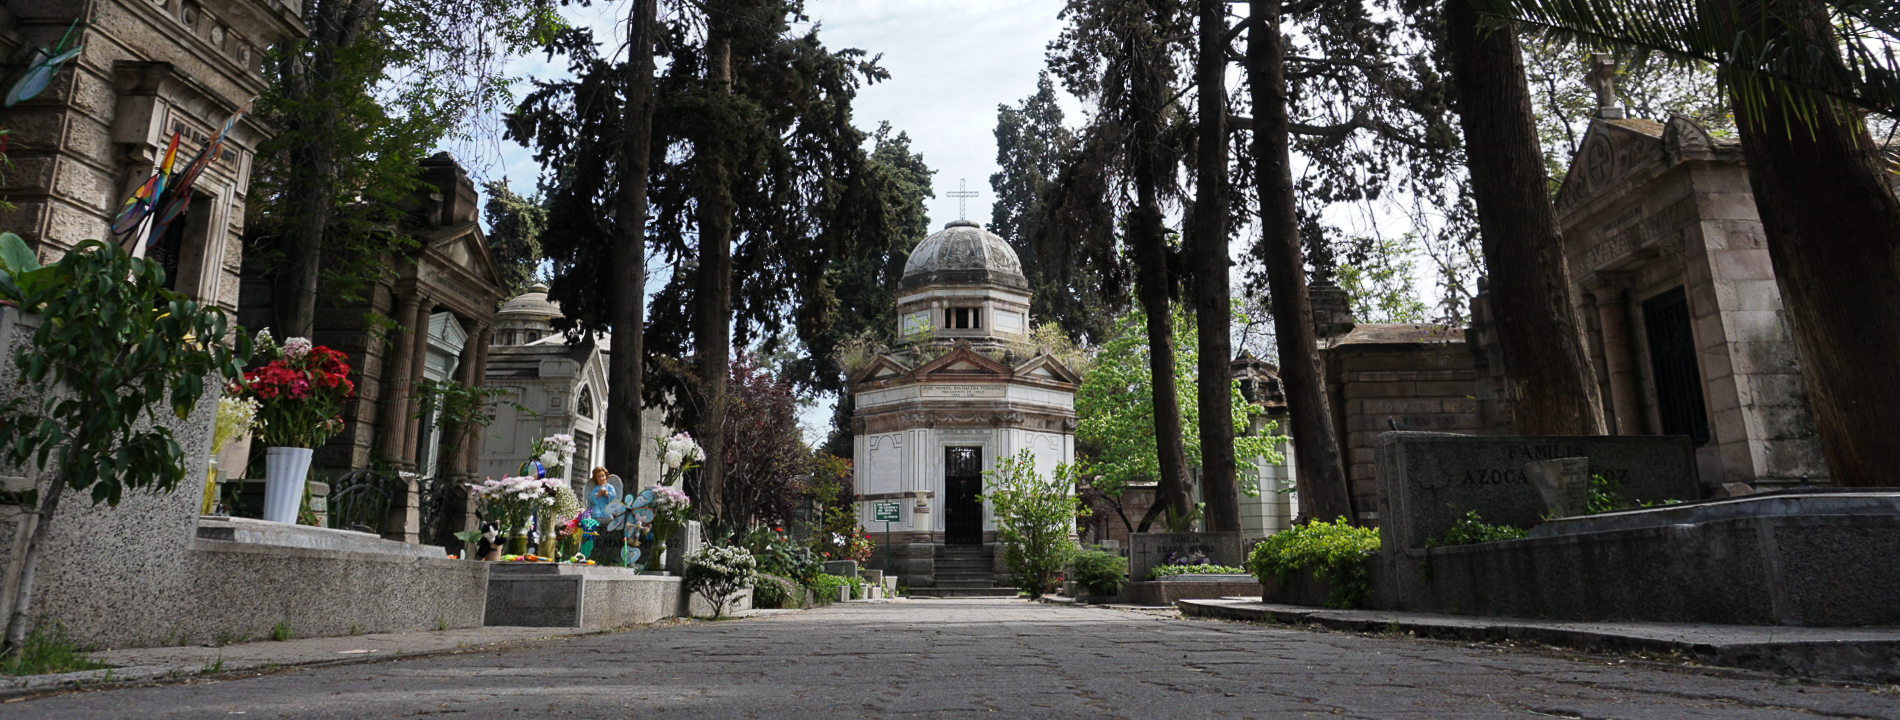 Cementerio General De Recoleta   Educando A Chile